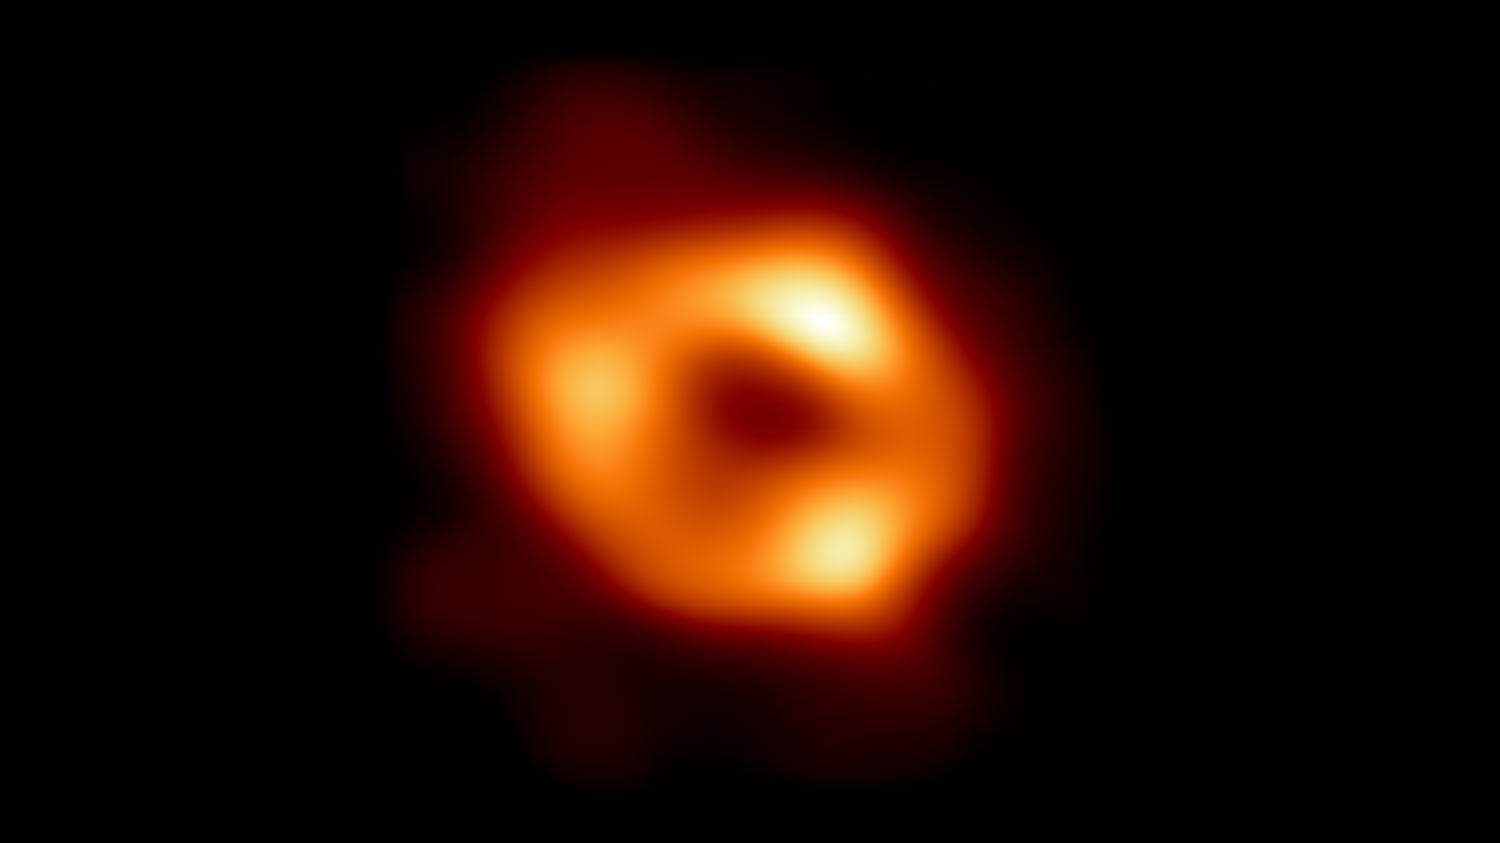 L'anello luminoso arancione mostra l'orizzonte degli eventi del gigantesco buco nero della Via Lattea, Sagittarius A*.  È una delle nostre migliori immagini spaziali.